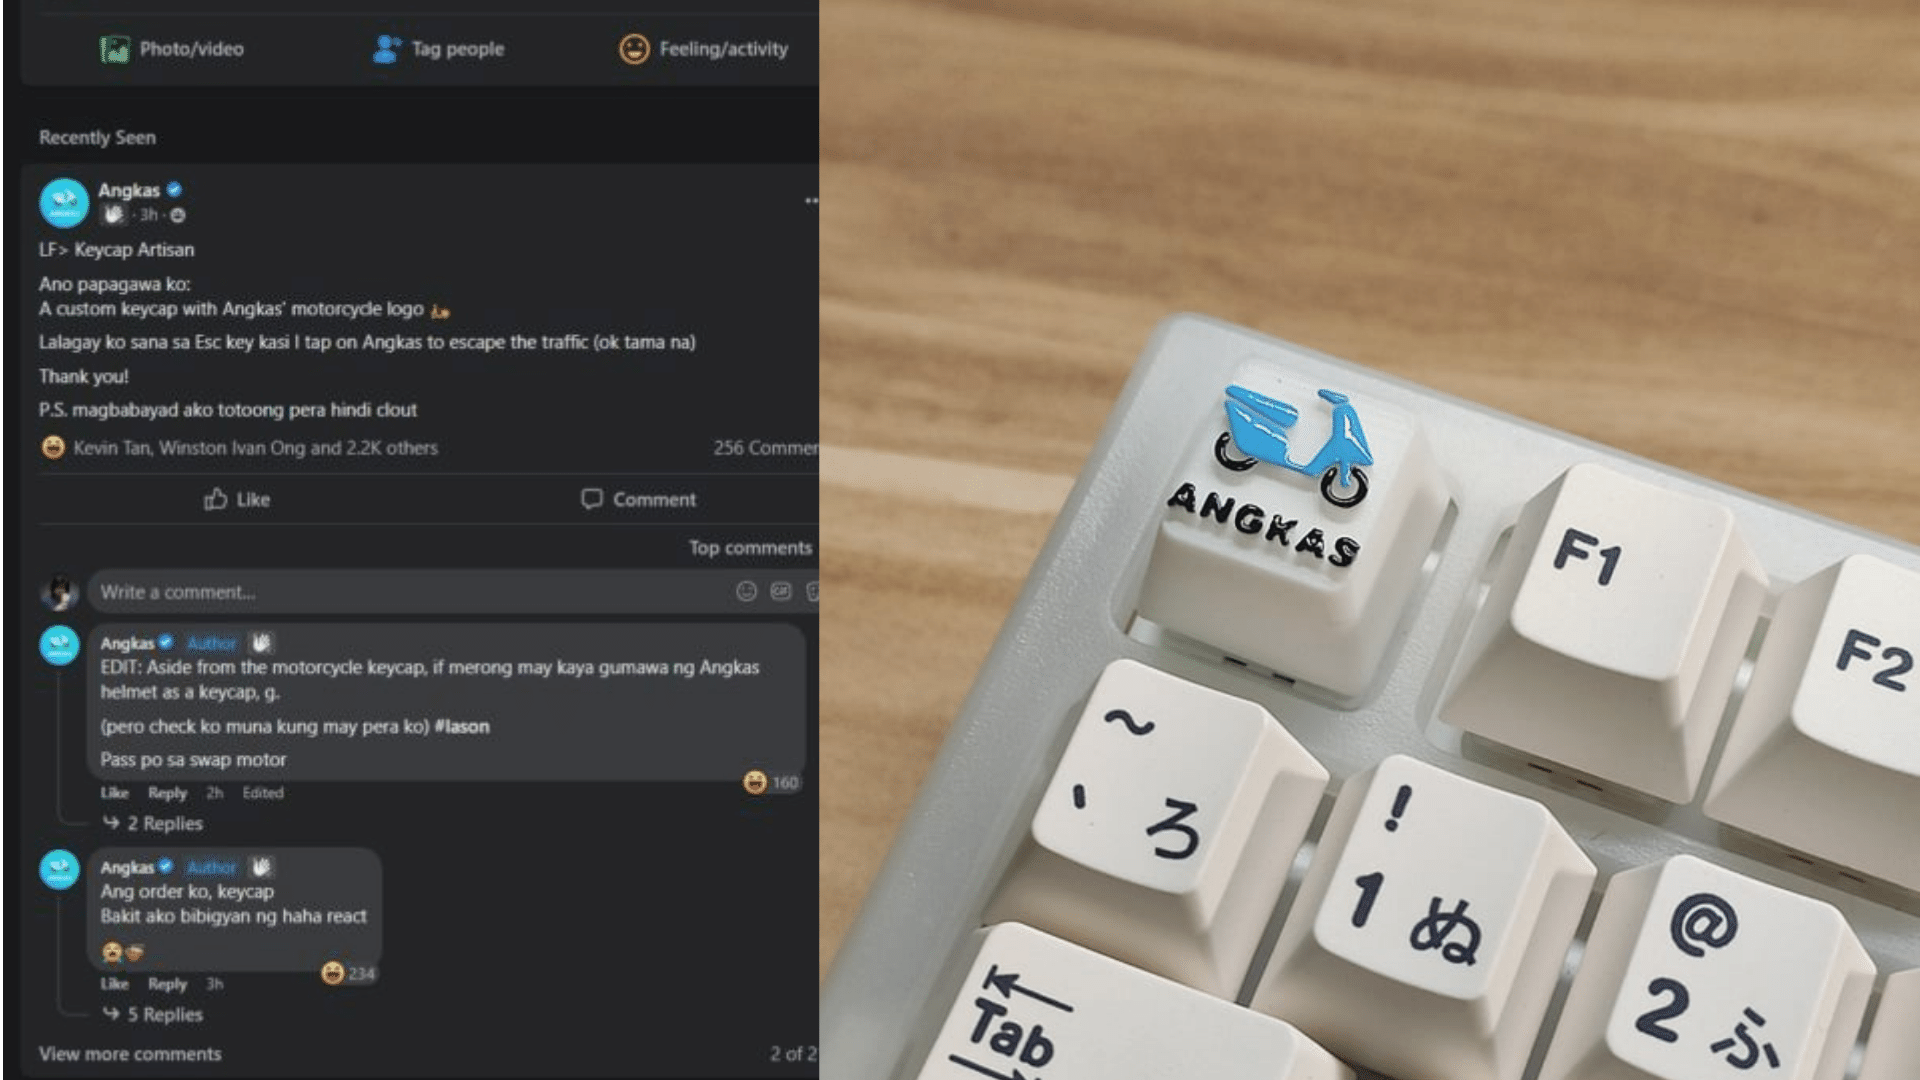 Angkas Joins Keyboard Addicts PH; Angkas Artisan Keycap Coming Soon?